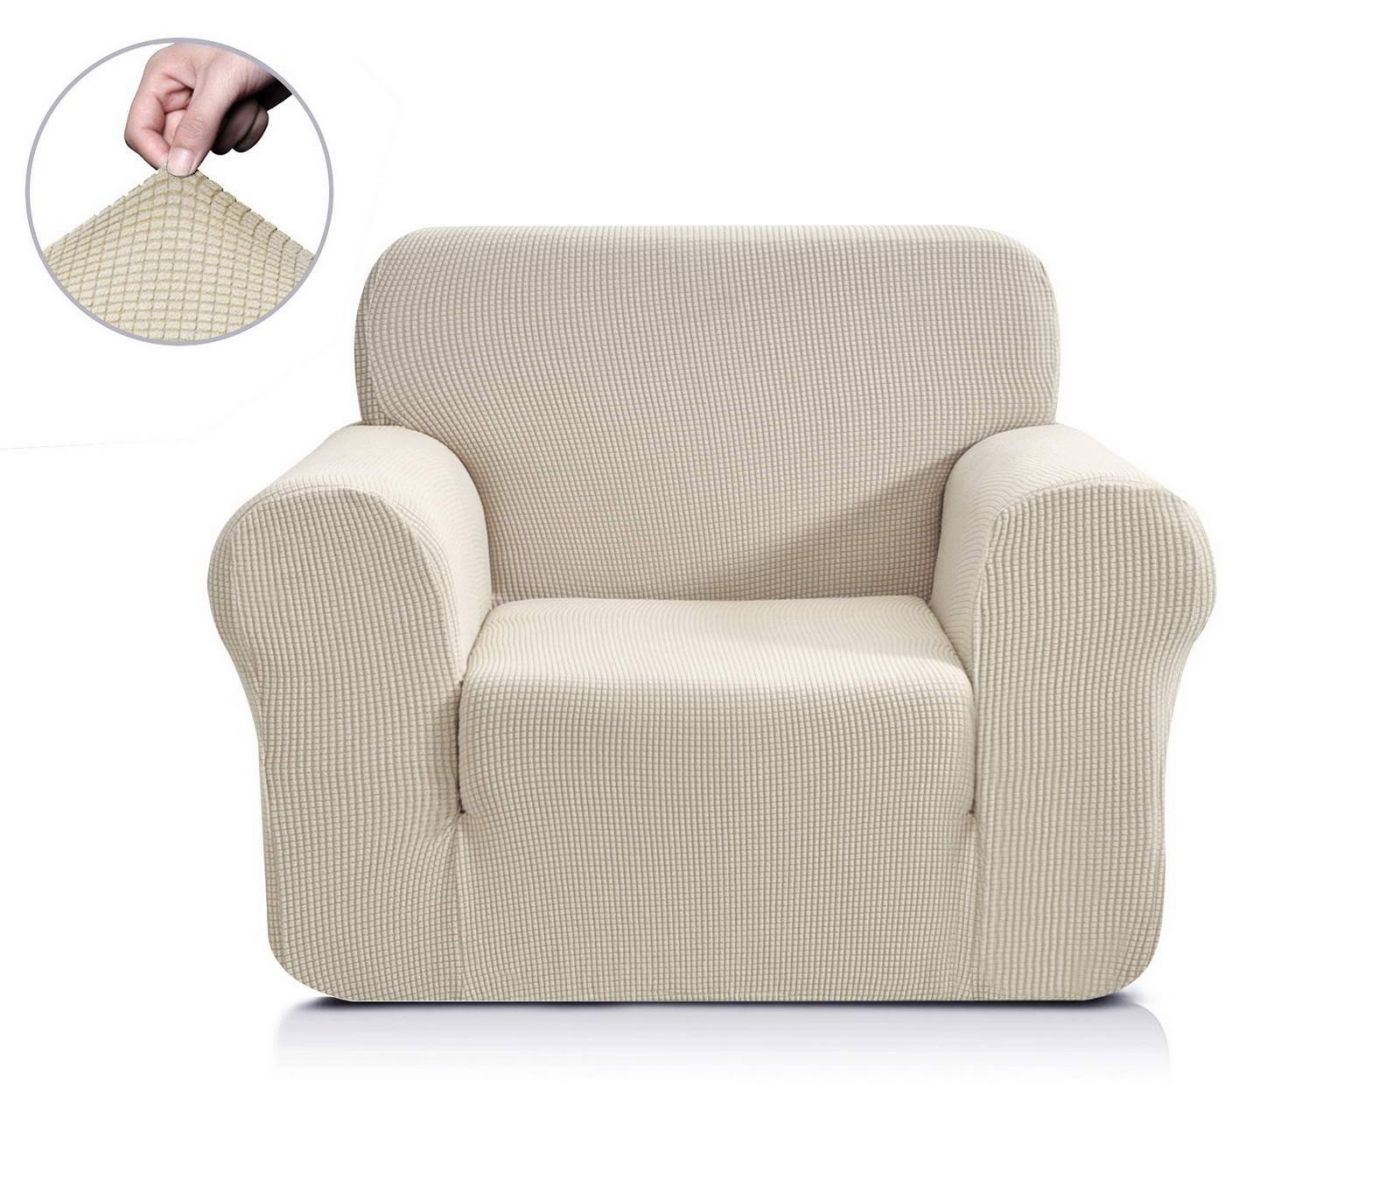 Чехол для кресла Моника цвет: молочный (Одноместный), размер Без наволочек sofi881465 Чехол для кресла Моника цвет: молочный (Одноместный) - фото 1